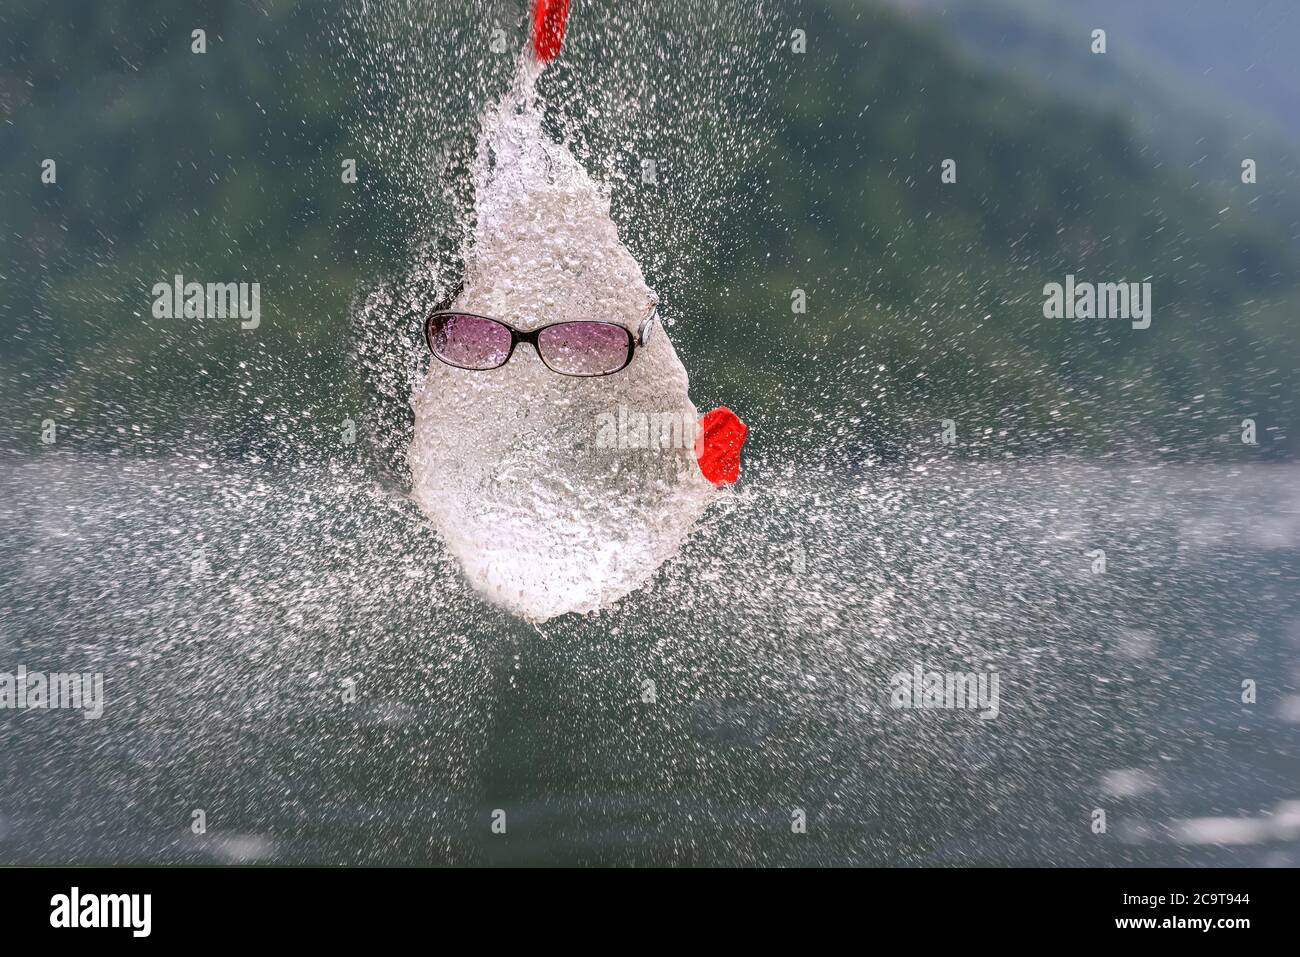 Résumé drôle figure humoristique avec un visage dans des lunettes de soleil fait d'eau et de spray, résultant d'un ballon d'éclatement rempli d'eau contre Banque D'Images